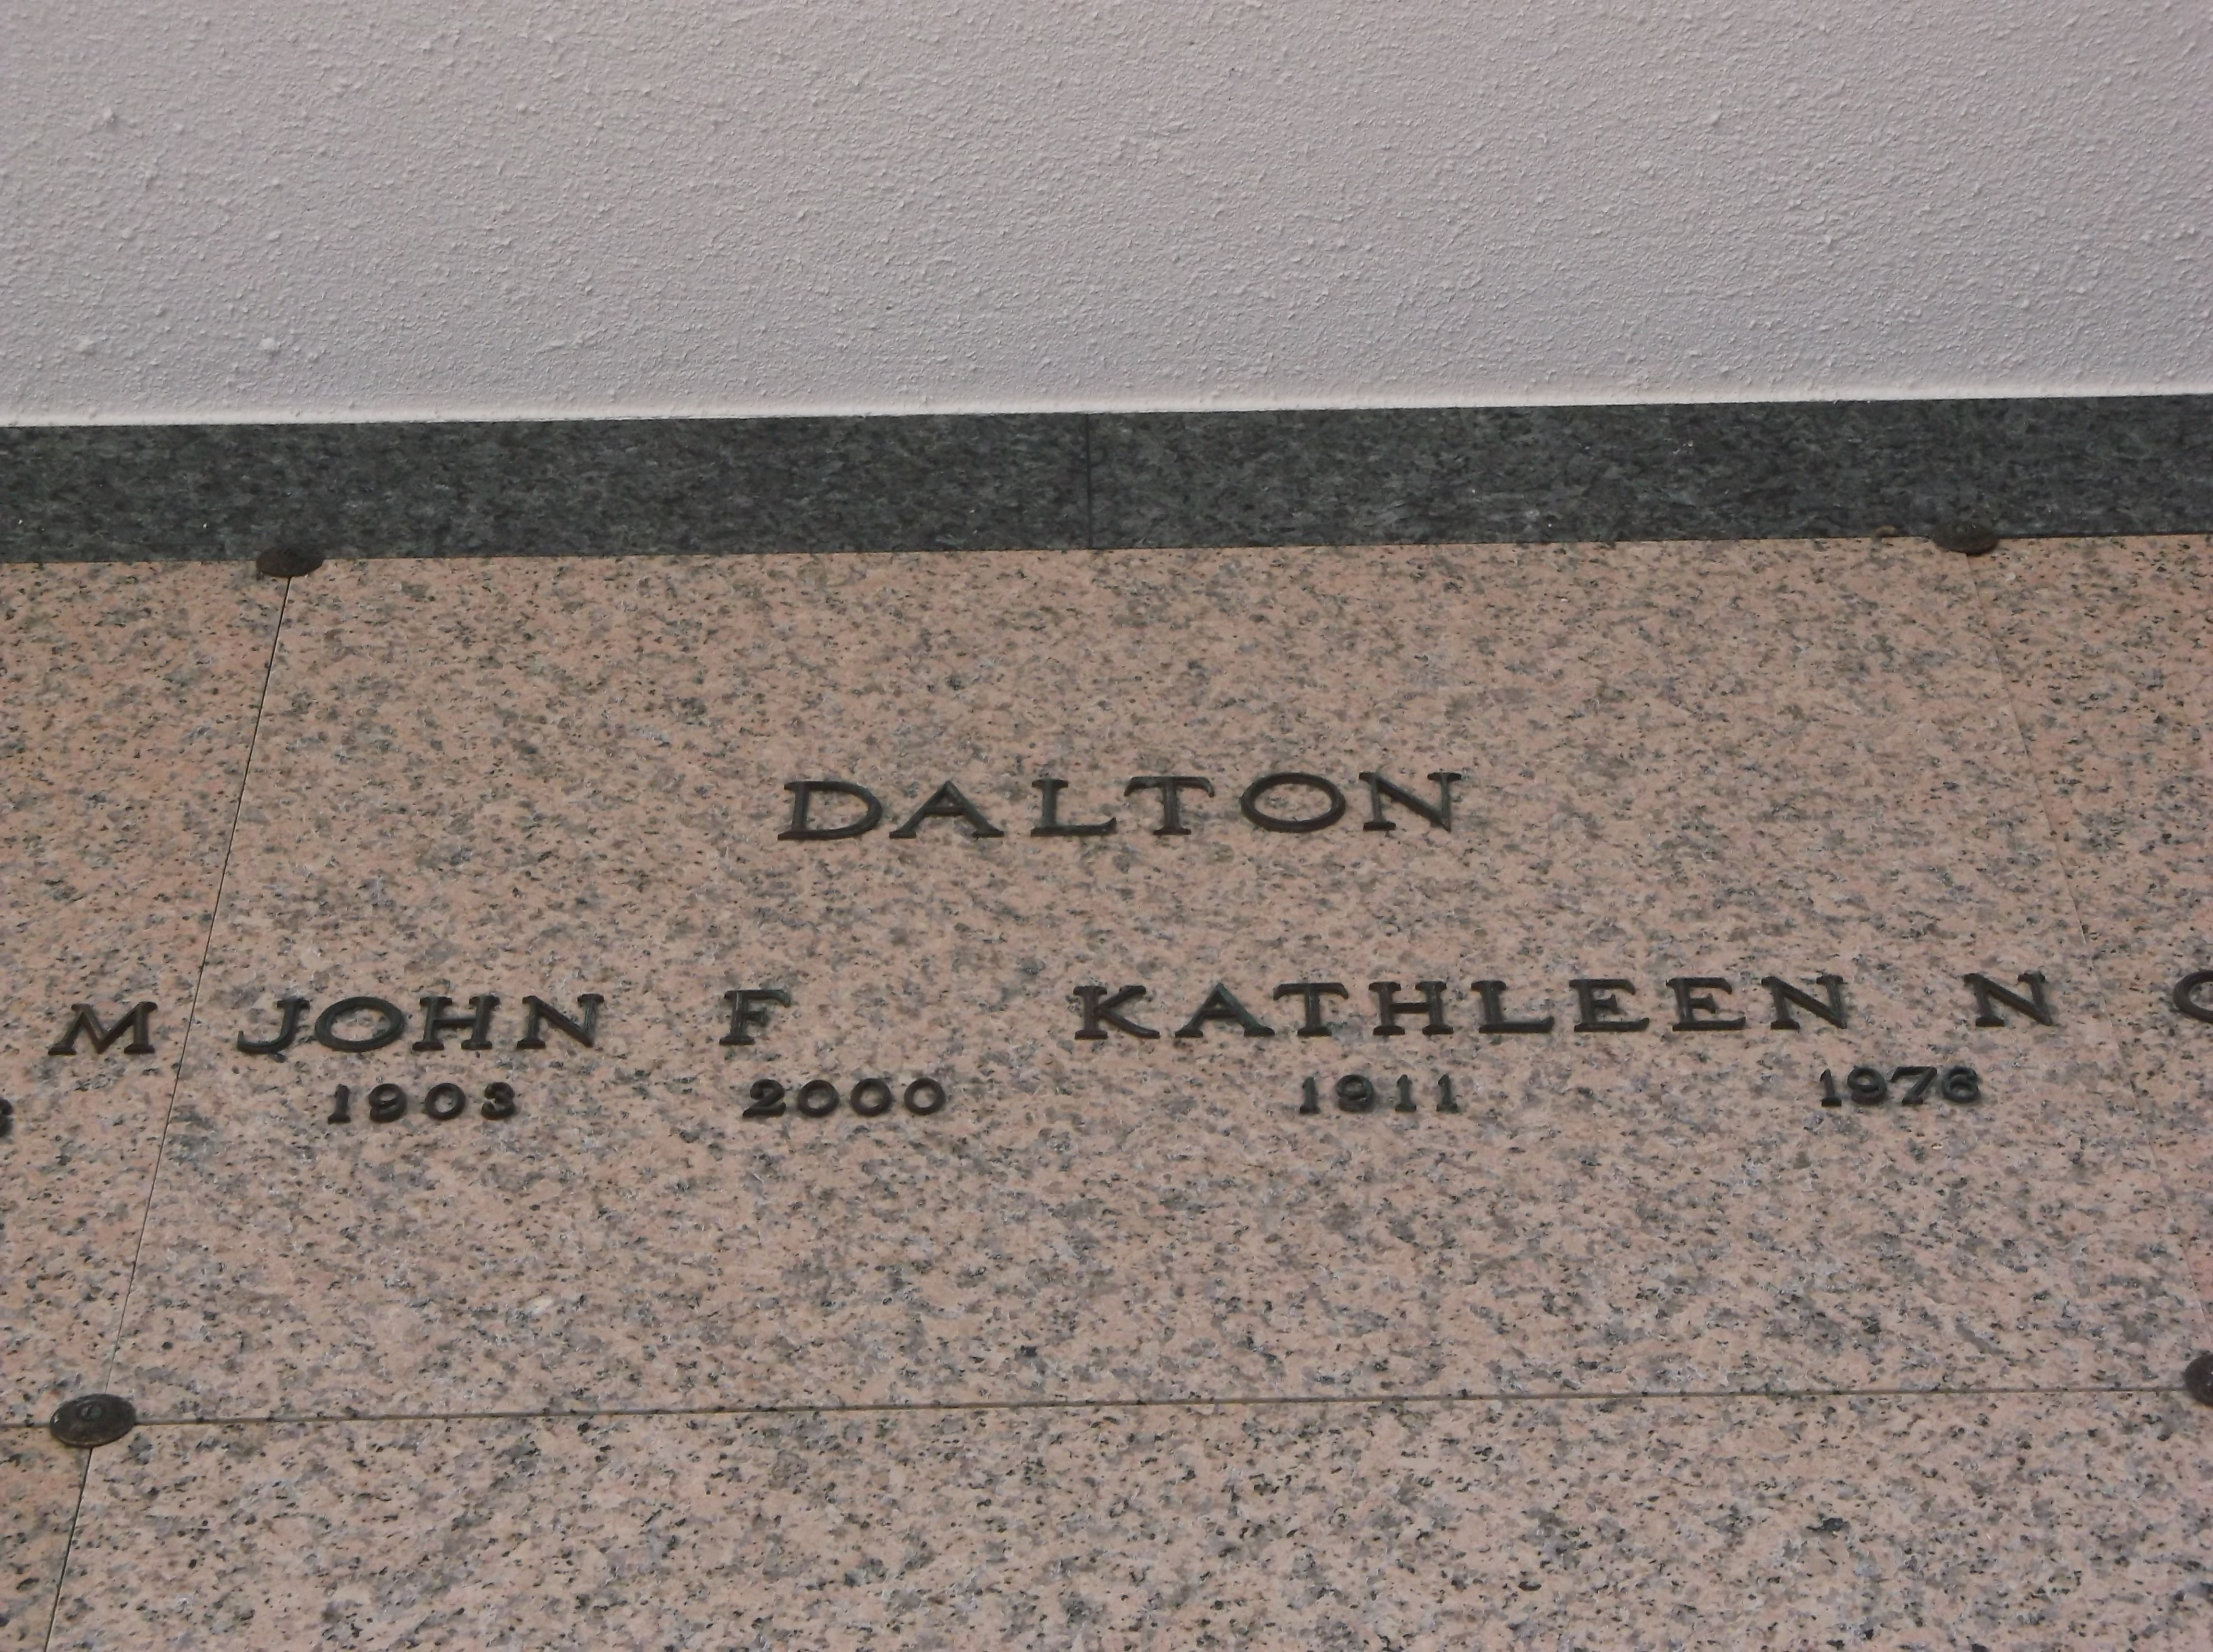 John F Dalton